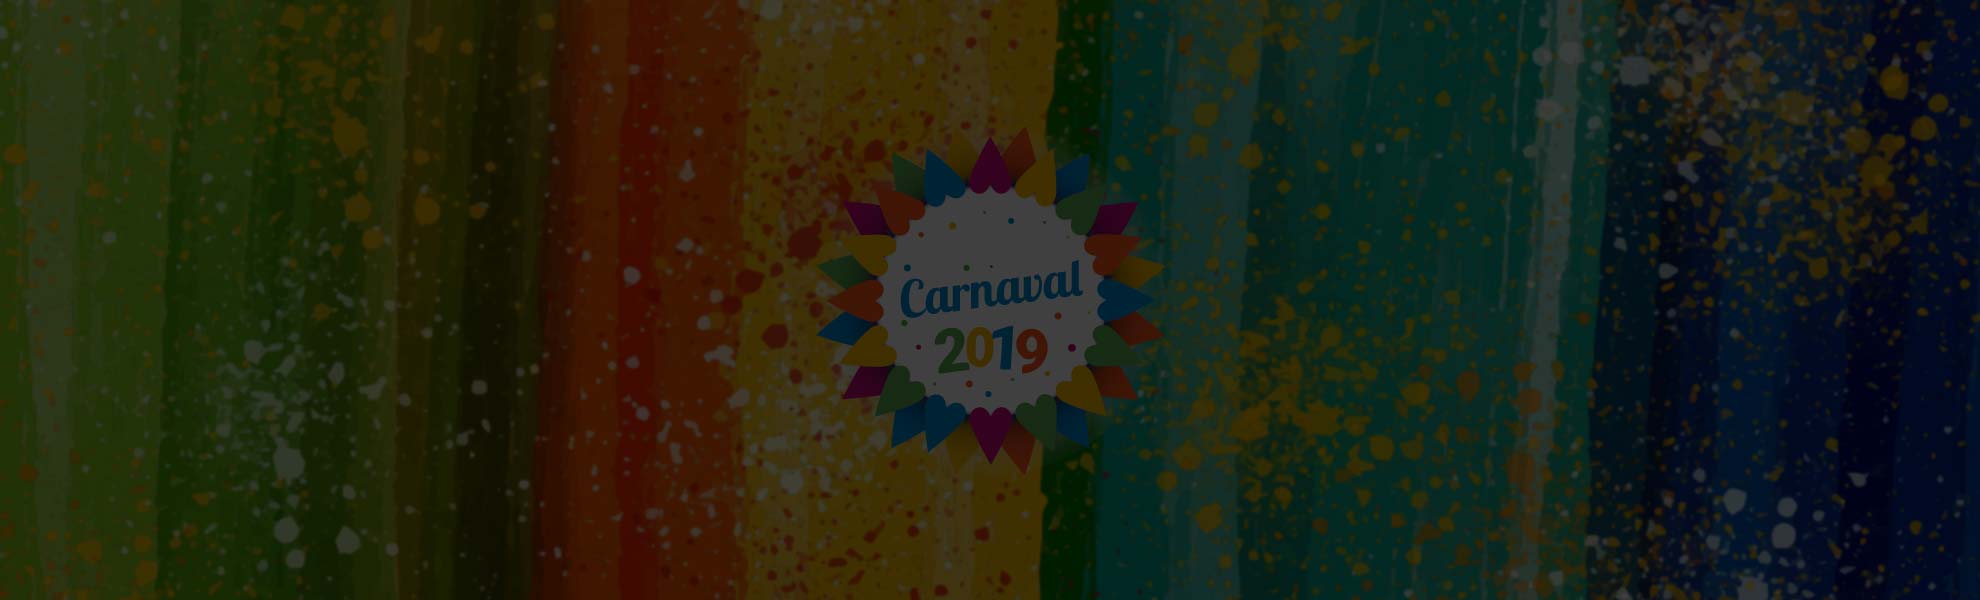 Férias de Carnaval 2019